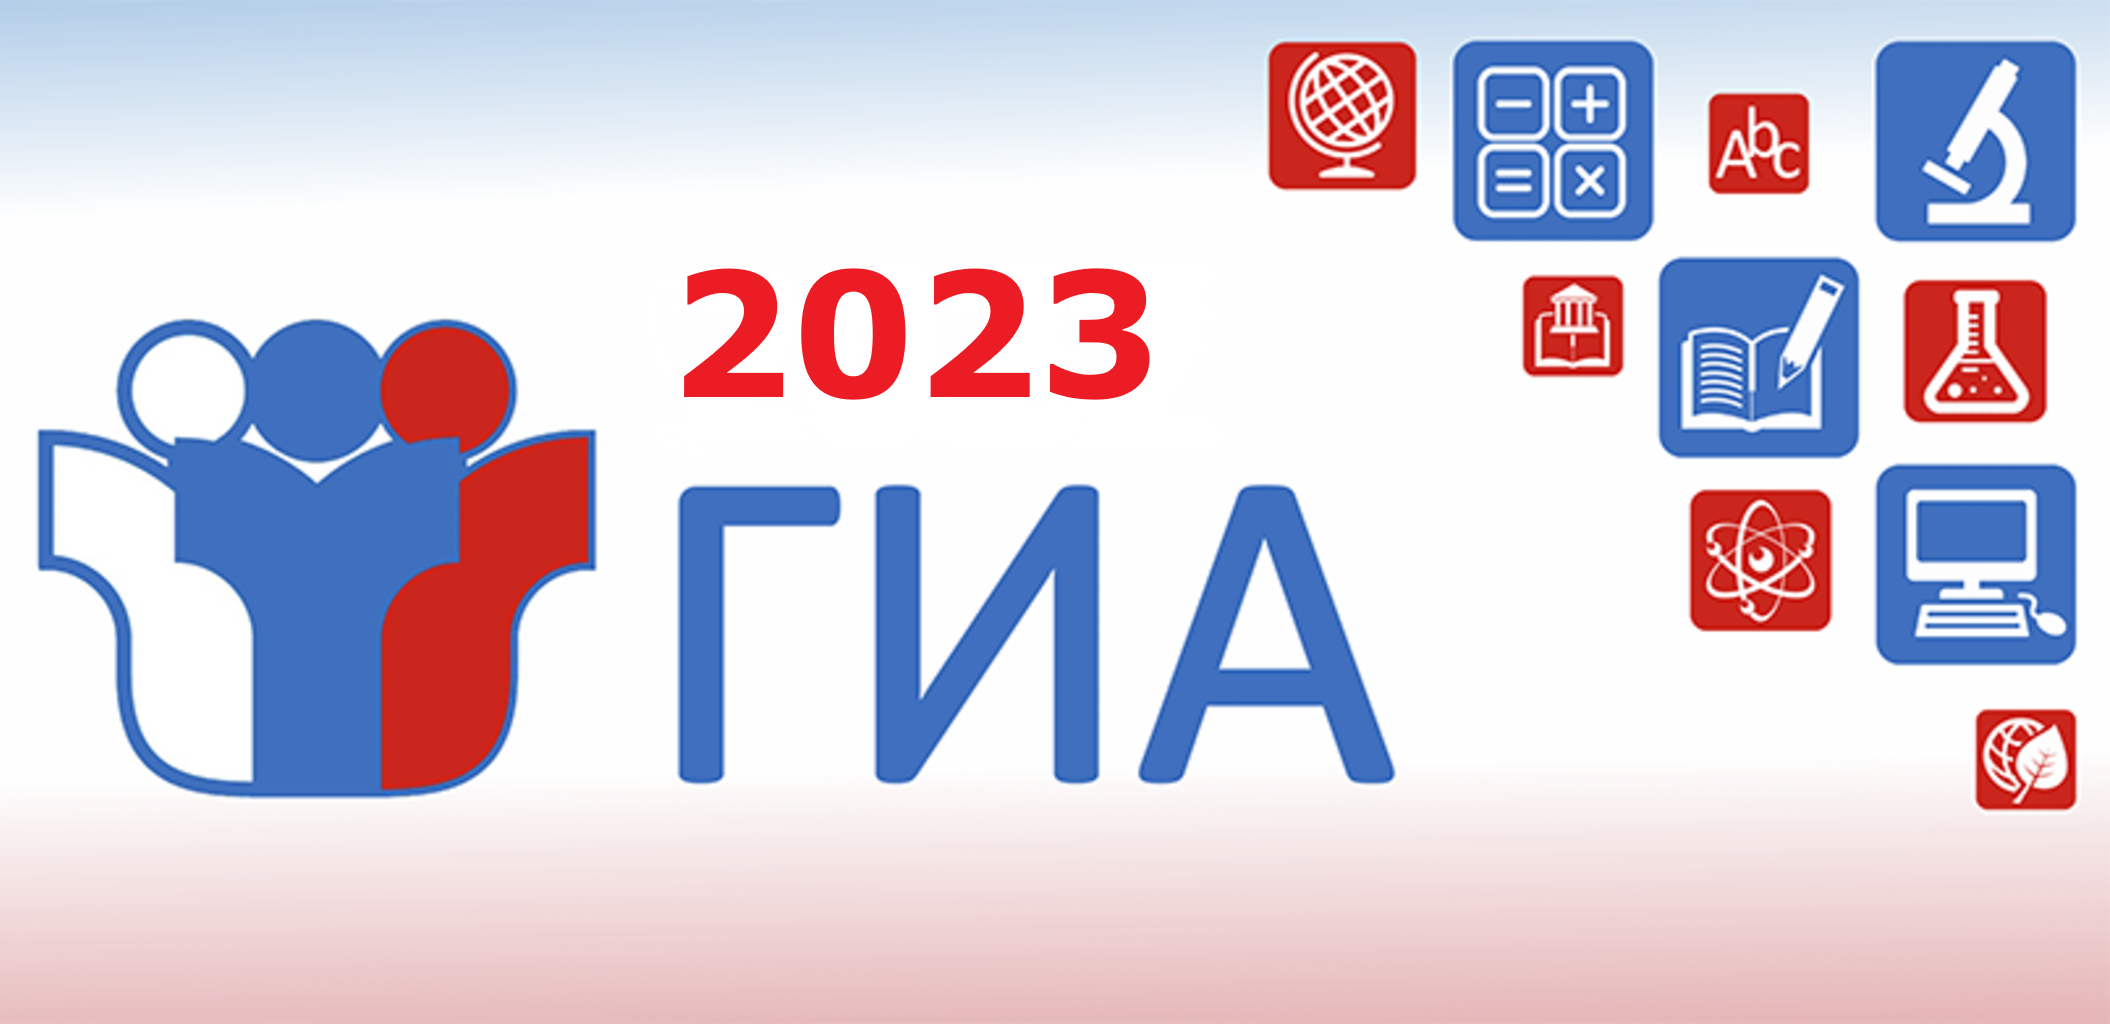 Аттестация 2023 2024 г г. ГИА 2023. Эмблема ГИА 2023. ГИА логотип. Баннер ГИА 2023.